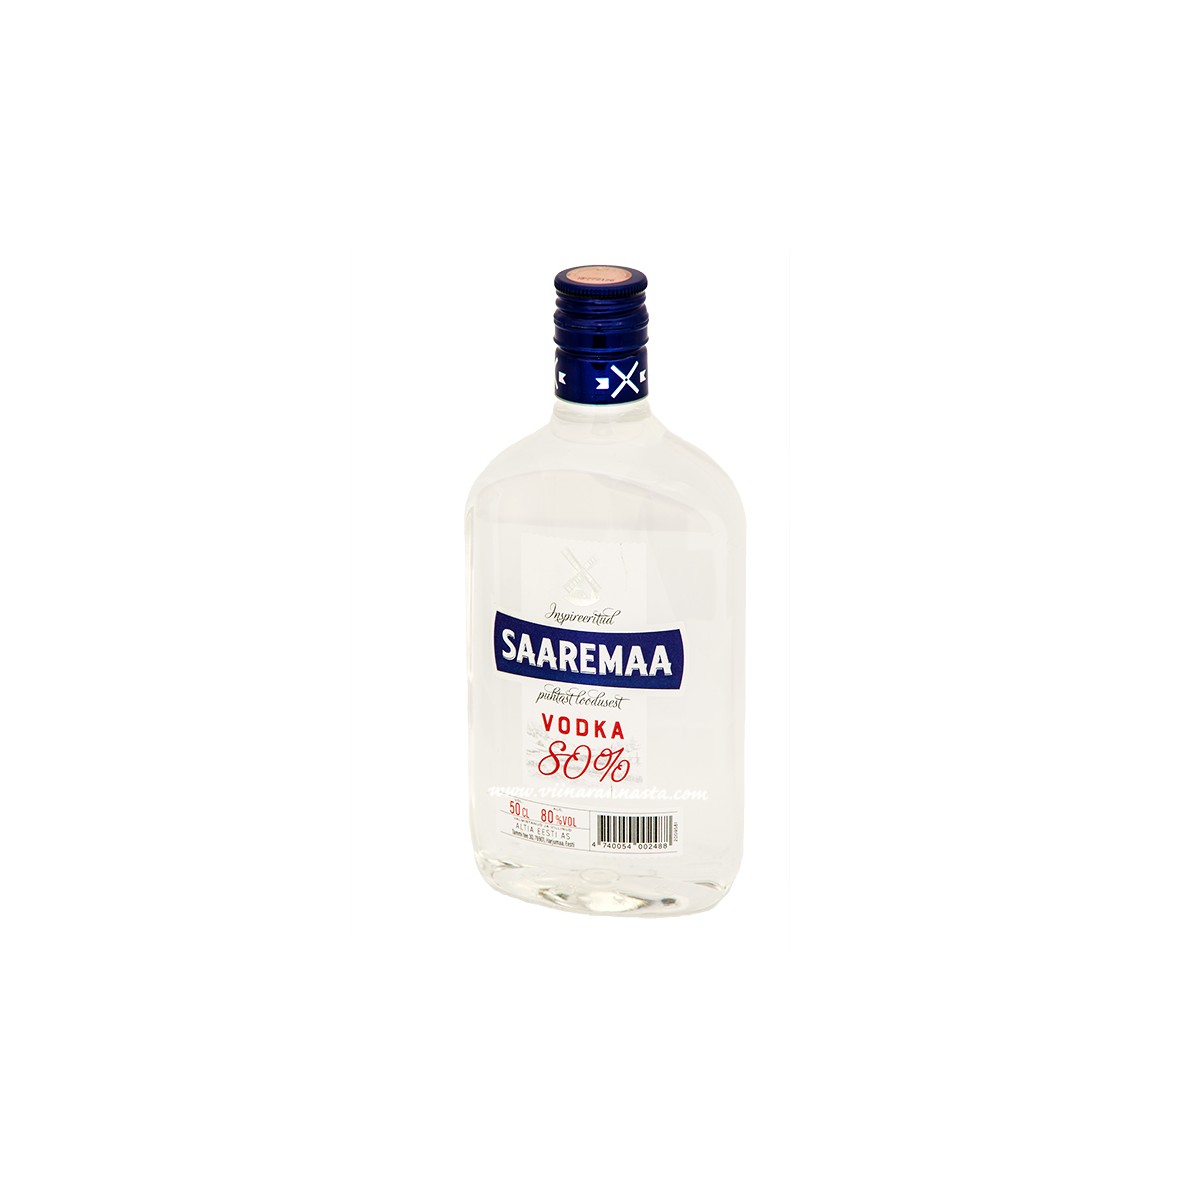 Saaremaa vodka 80 % 50cl PET